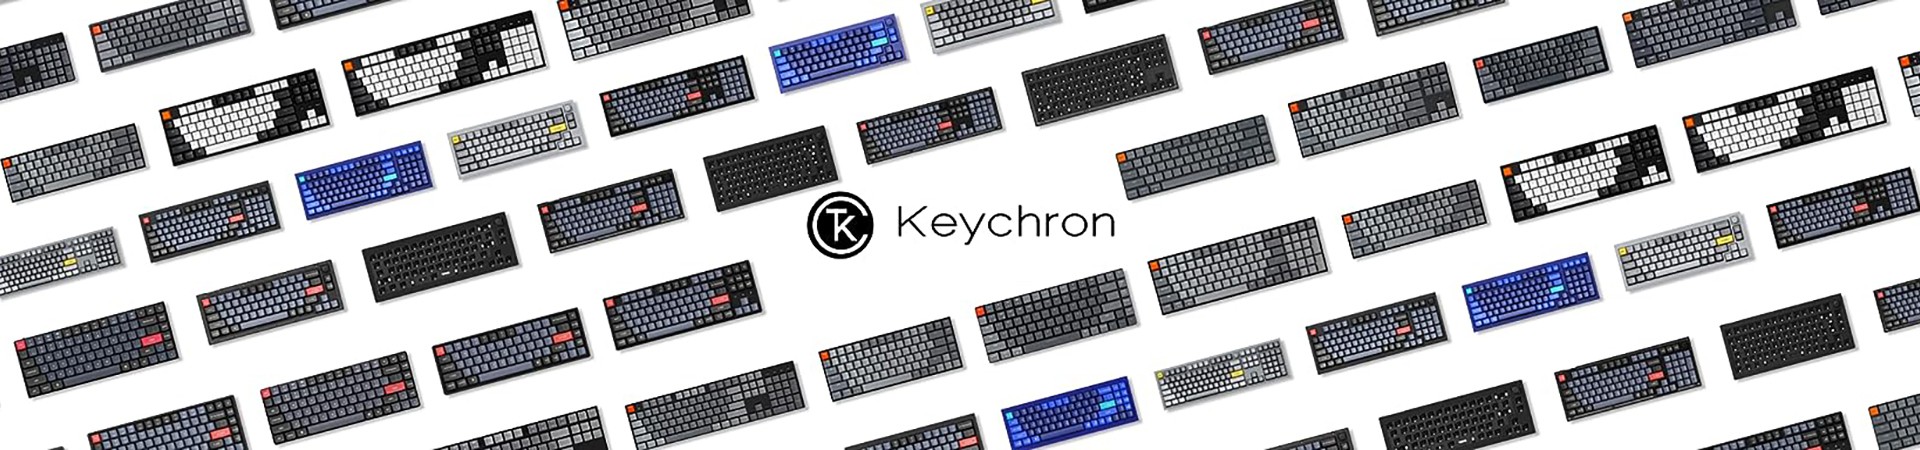 Keychron-a